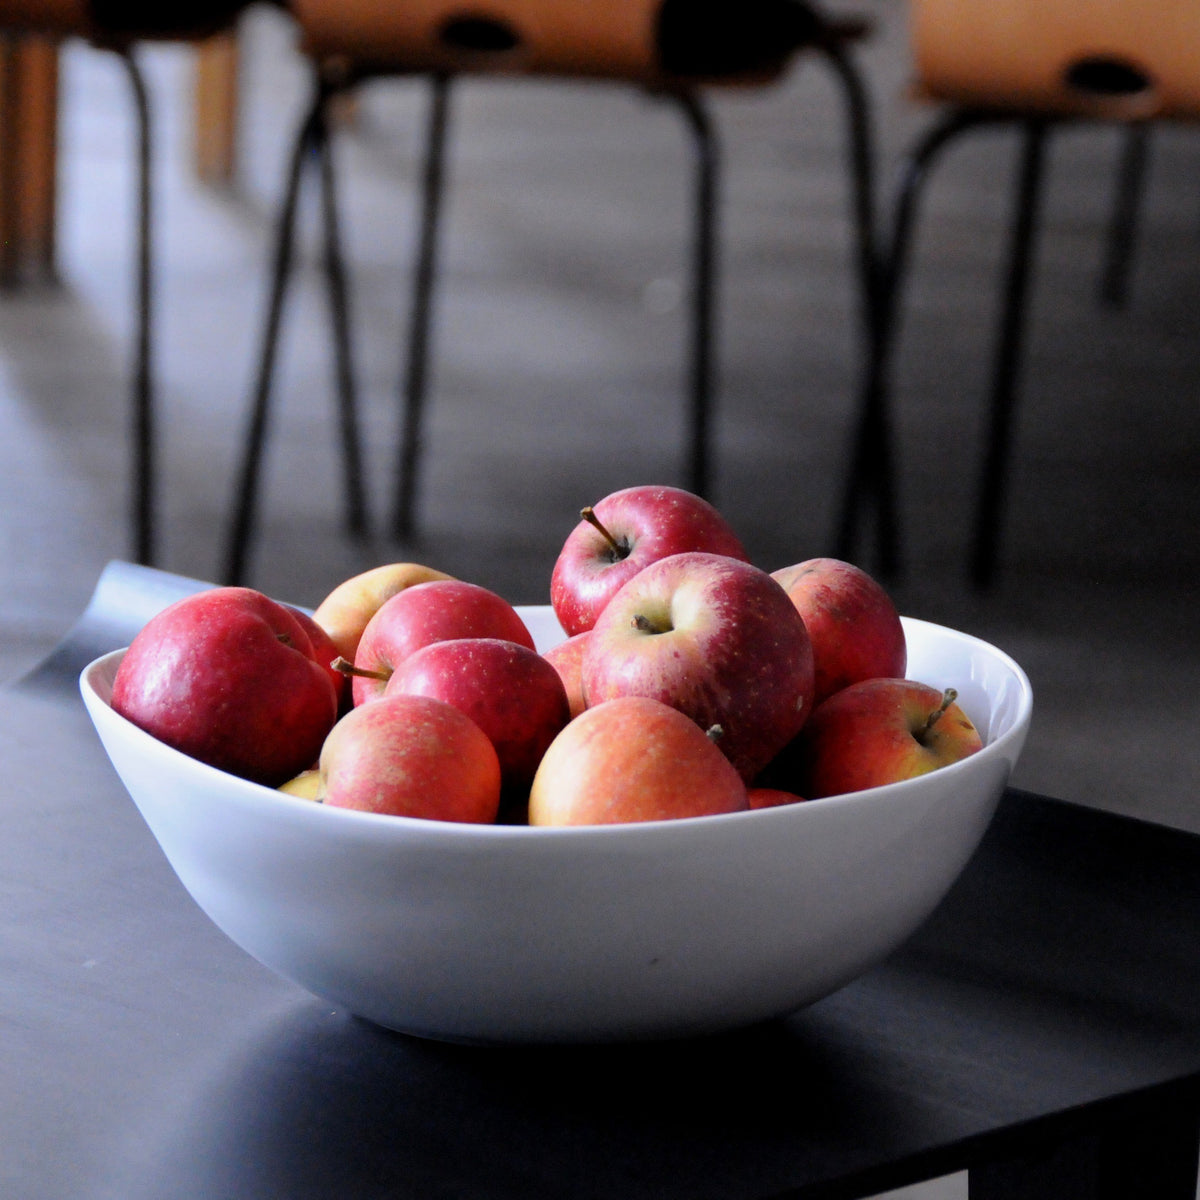 saladier en porcelaine blanche rempli de pommes posé sur une table basse noire - tsé tsé